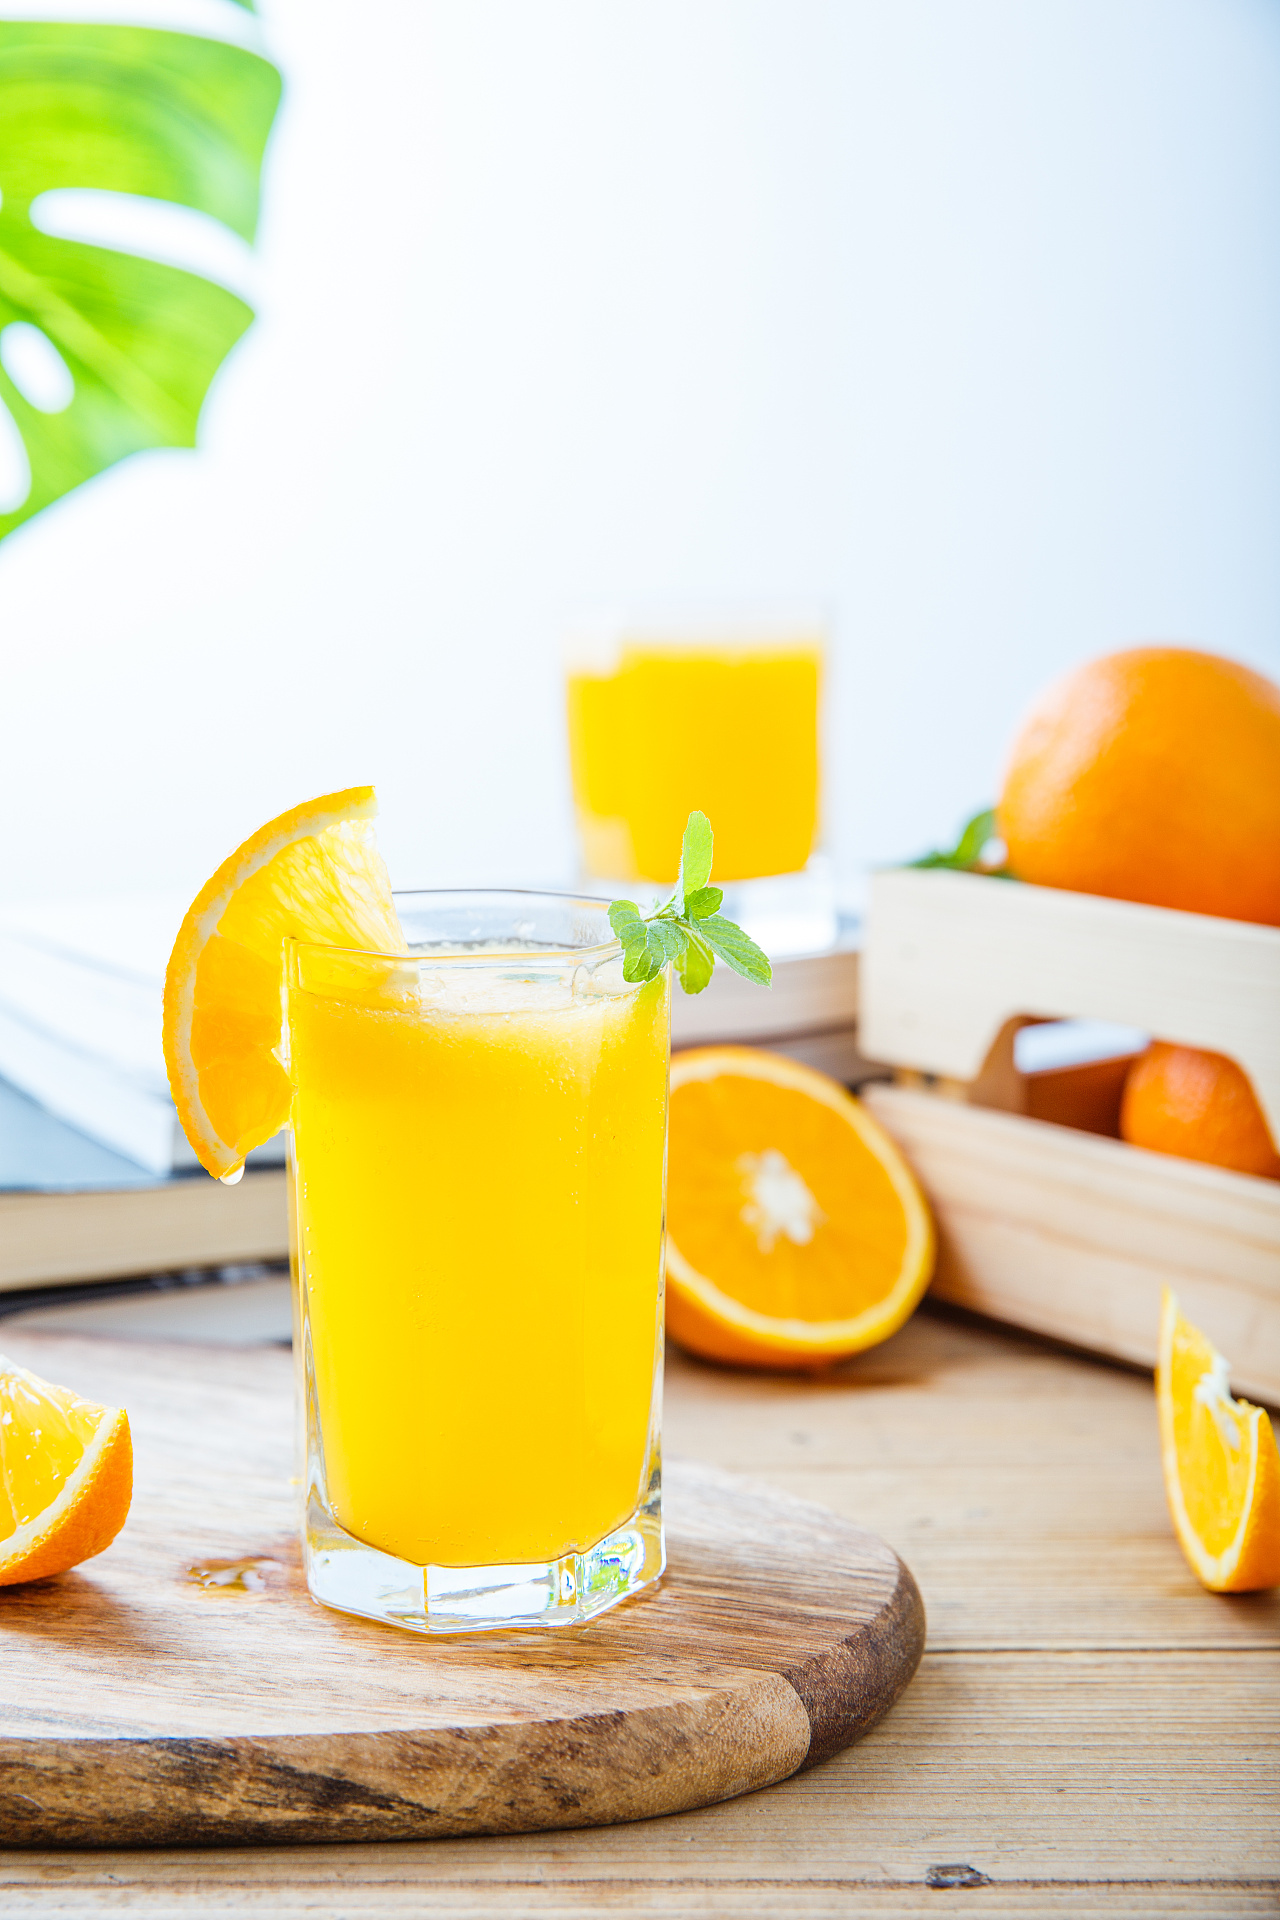 砂糖橘雪梨汁的做法_【图解】砂糖橘雪梨汁怎么做如何做好吃_砂糖橘雪梨汁家常做法大全_谢小果美食_豆果美食